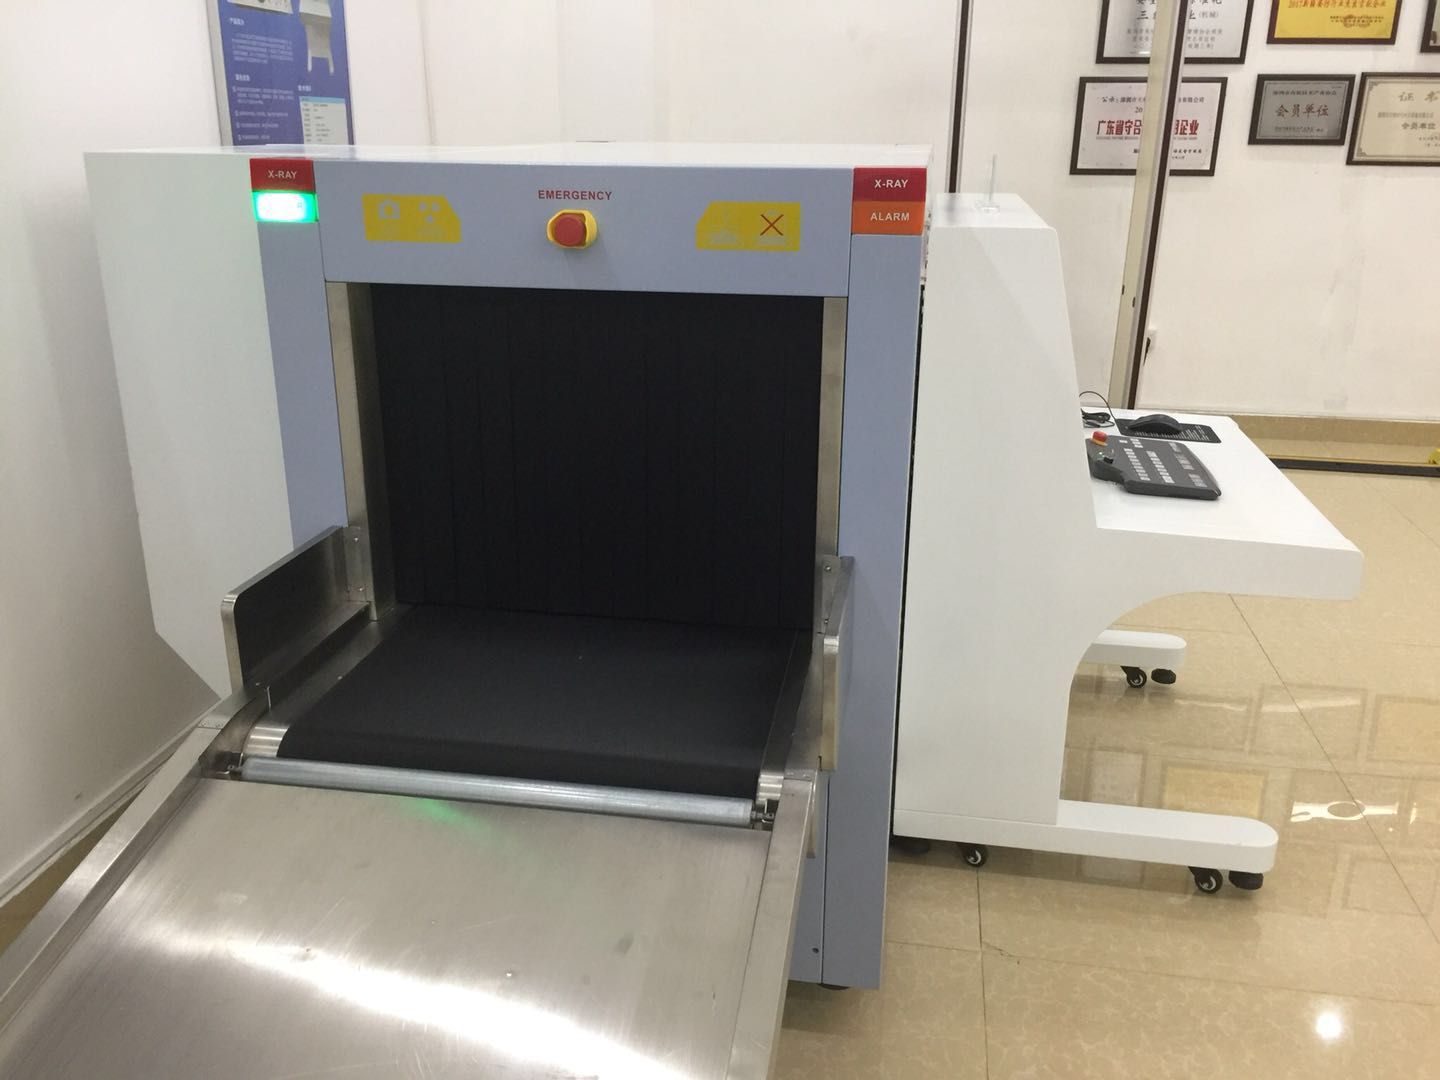 Detector de metales de rayos X, máquina de exploración, inspección de seguridad aeroportuaria, explosivos con placa Detectora del Reino Unido